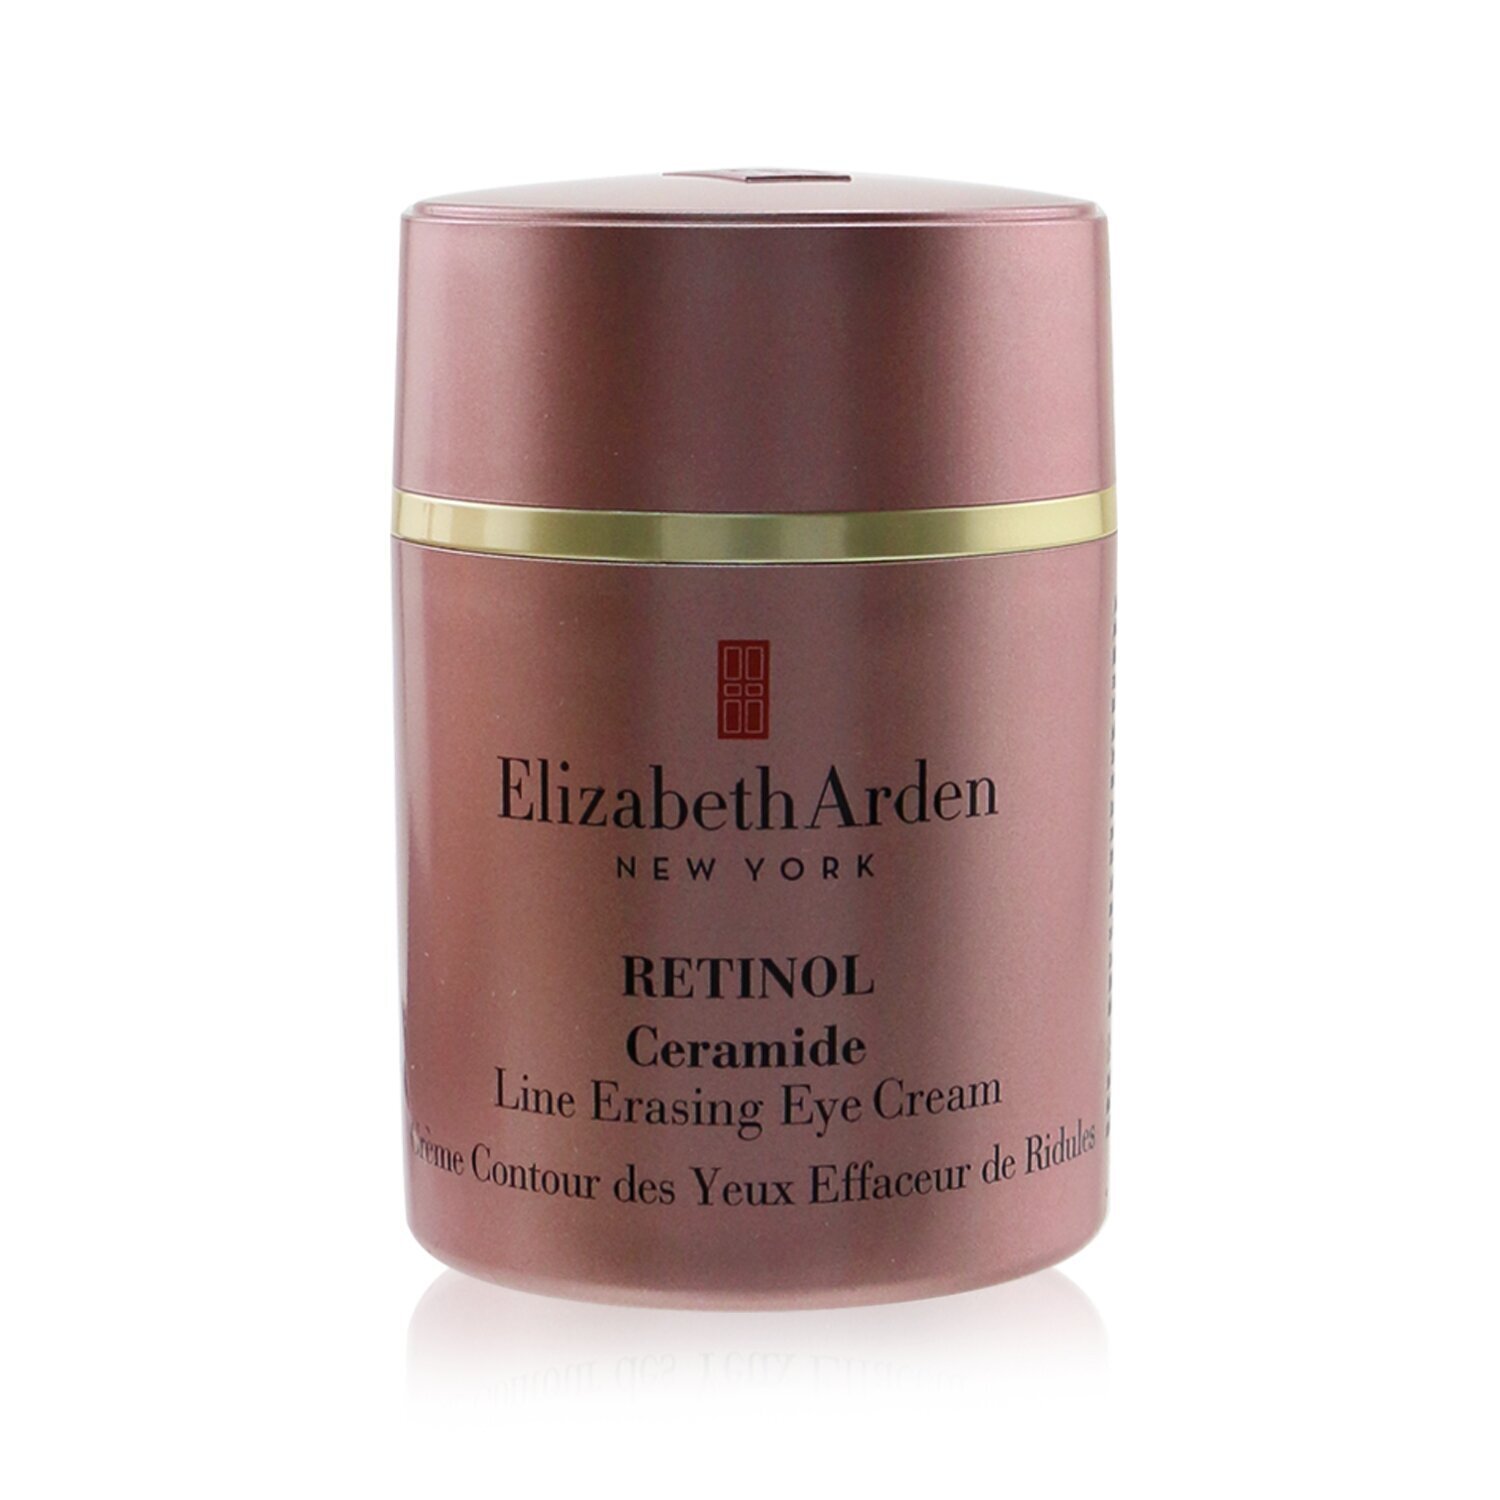 伊麗莎白雅頓 Elizabeth Arden - 神經酰胺視黃醇去皺眼霜